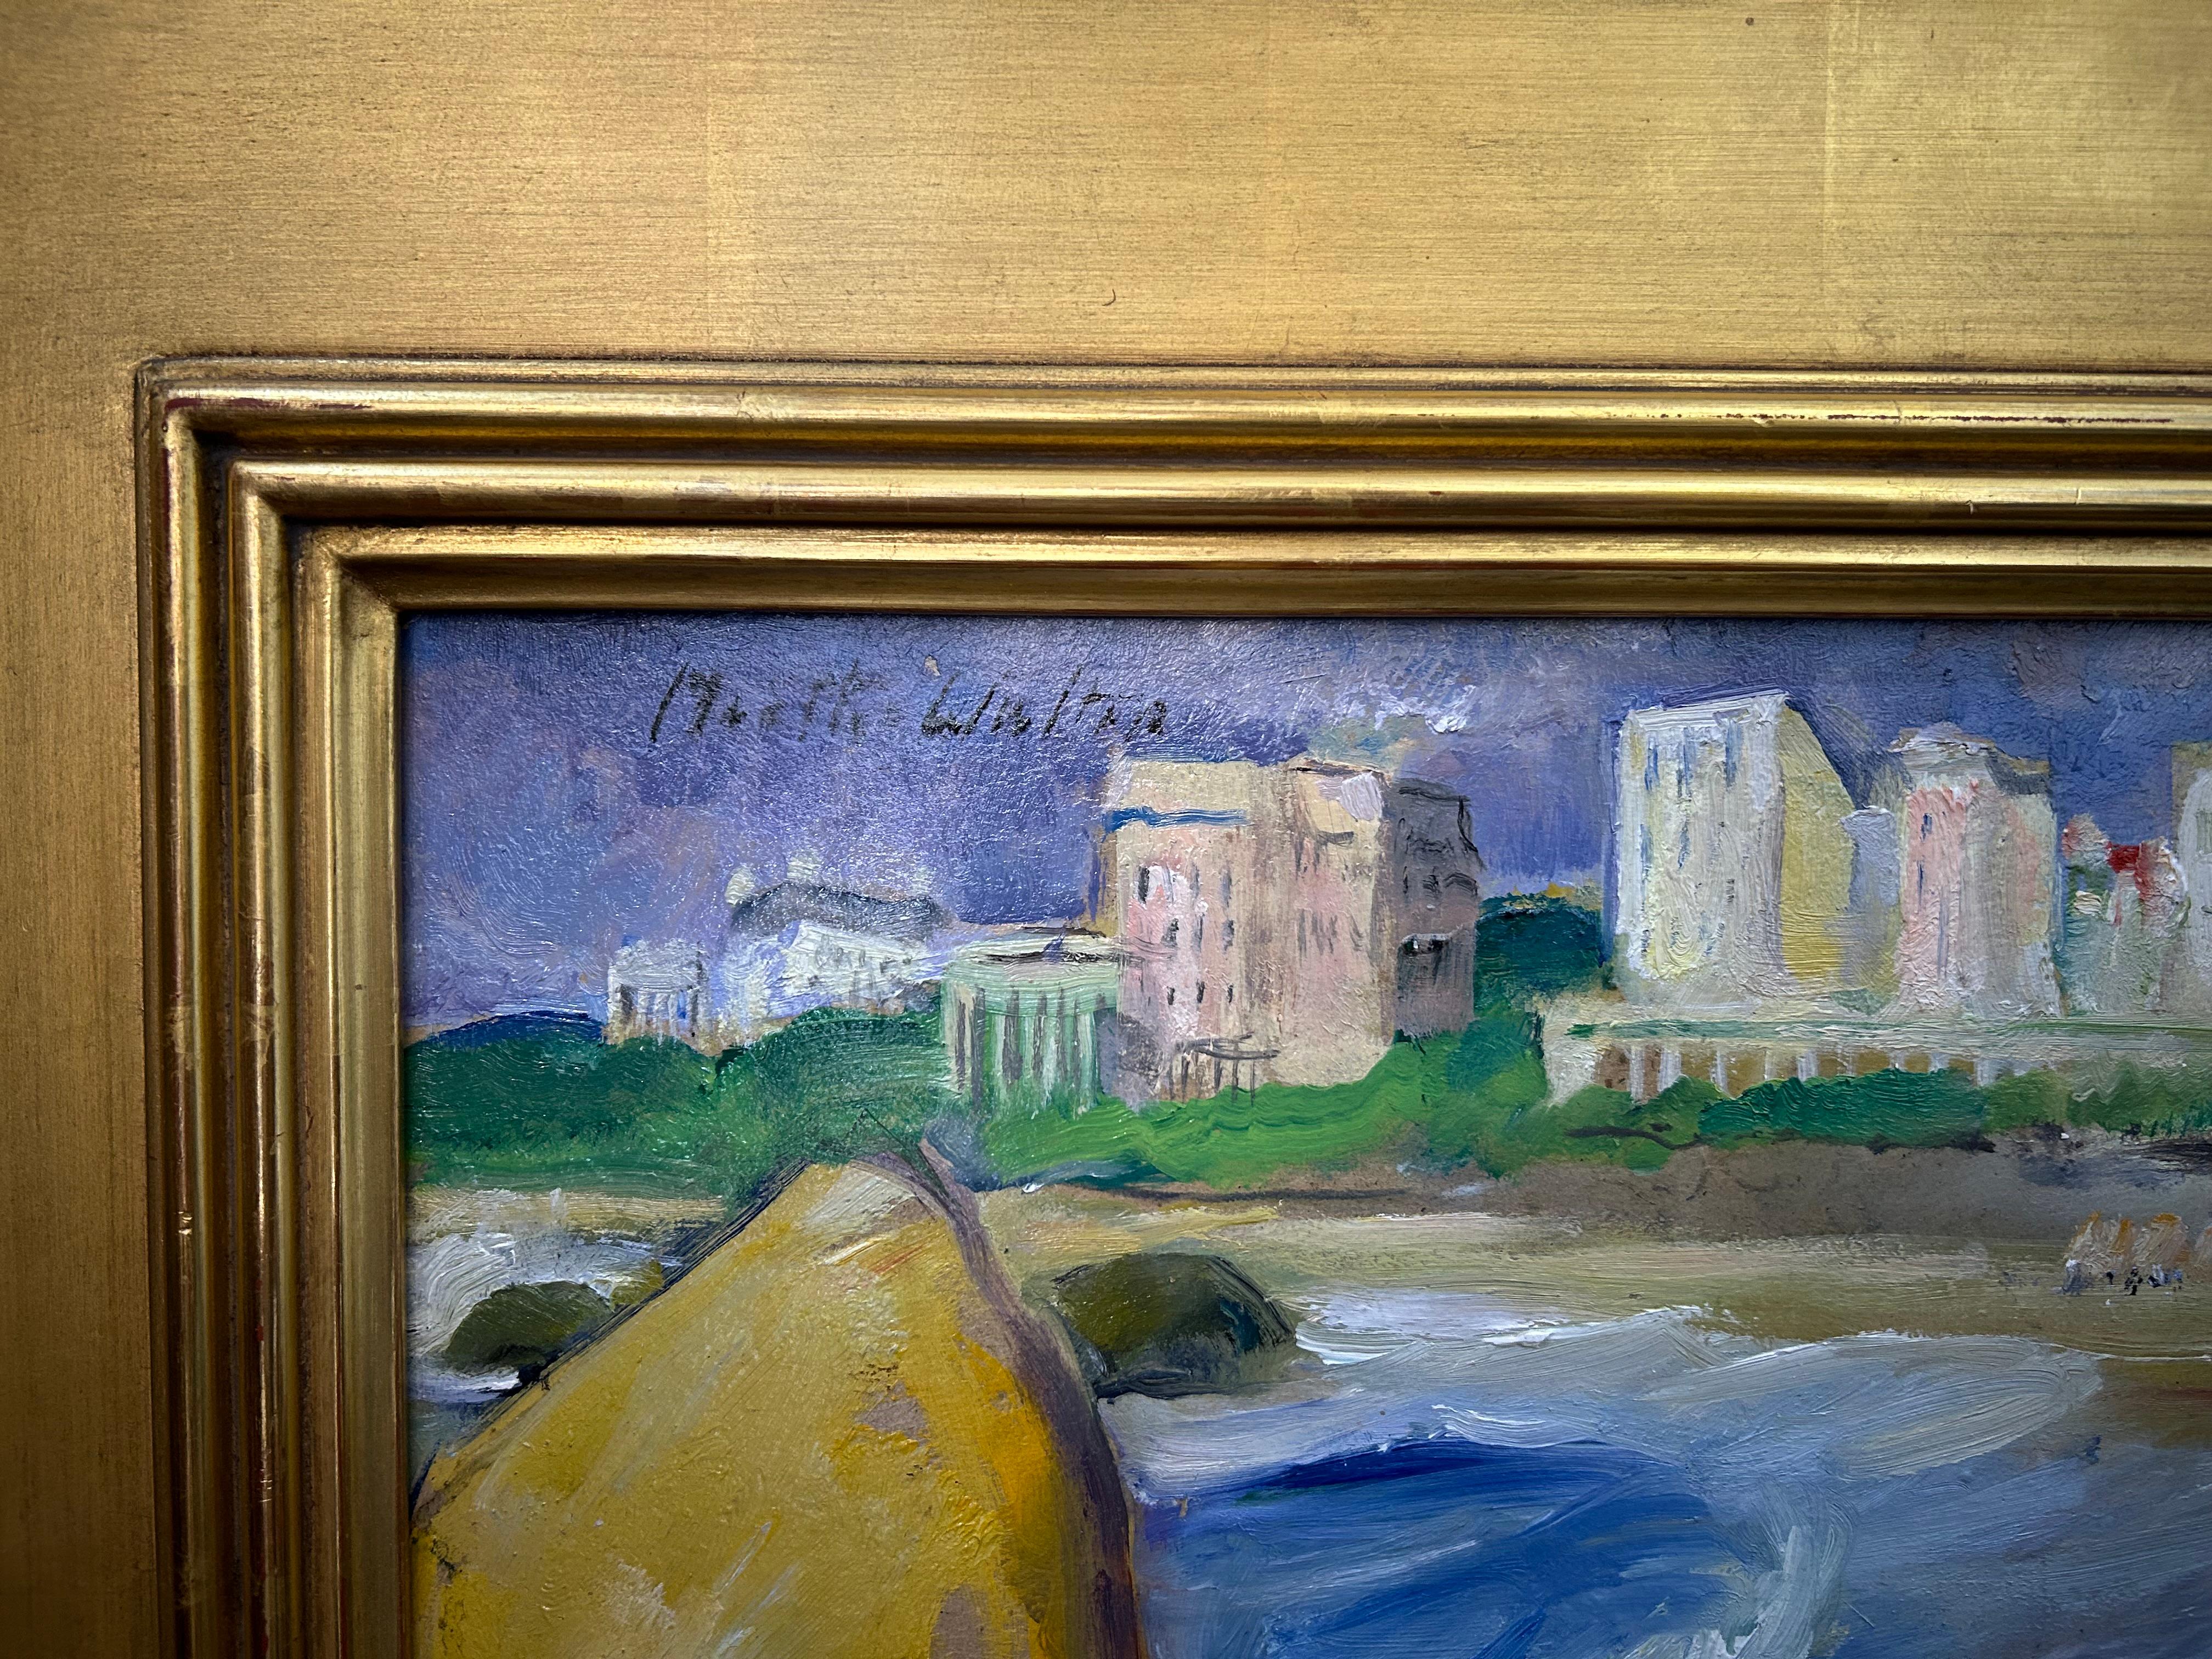 Bathing by the Big Rock, amerikanische impressionistische Landschaft und Strands- und Strandszene (Amerikanischer Impressionismus), Painting, von Martha Walter